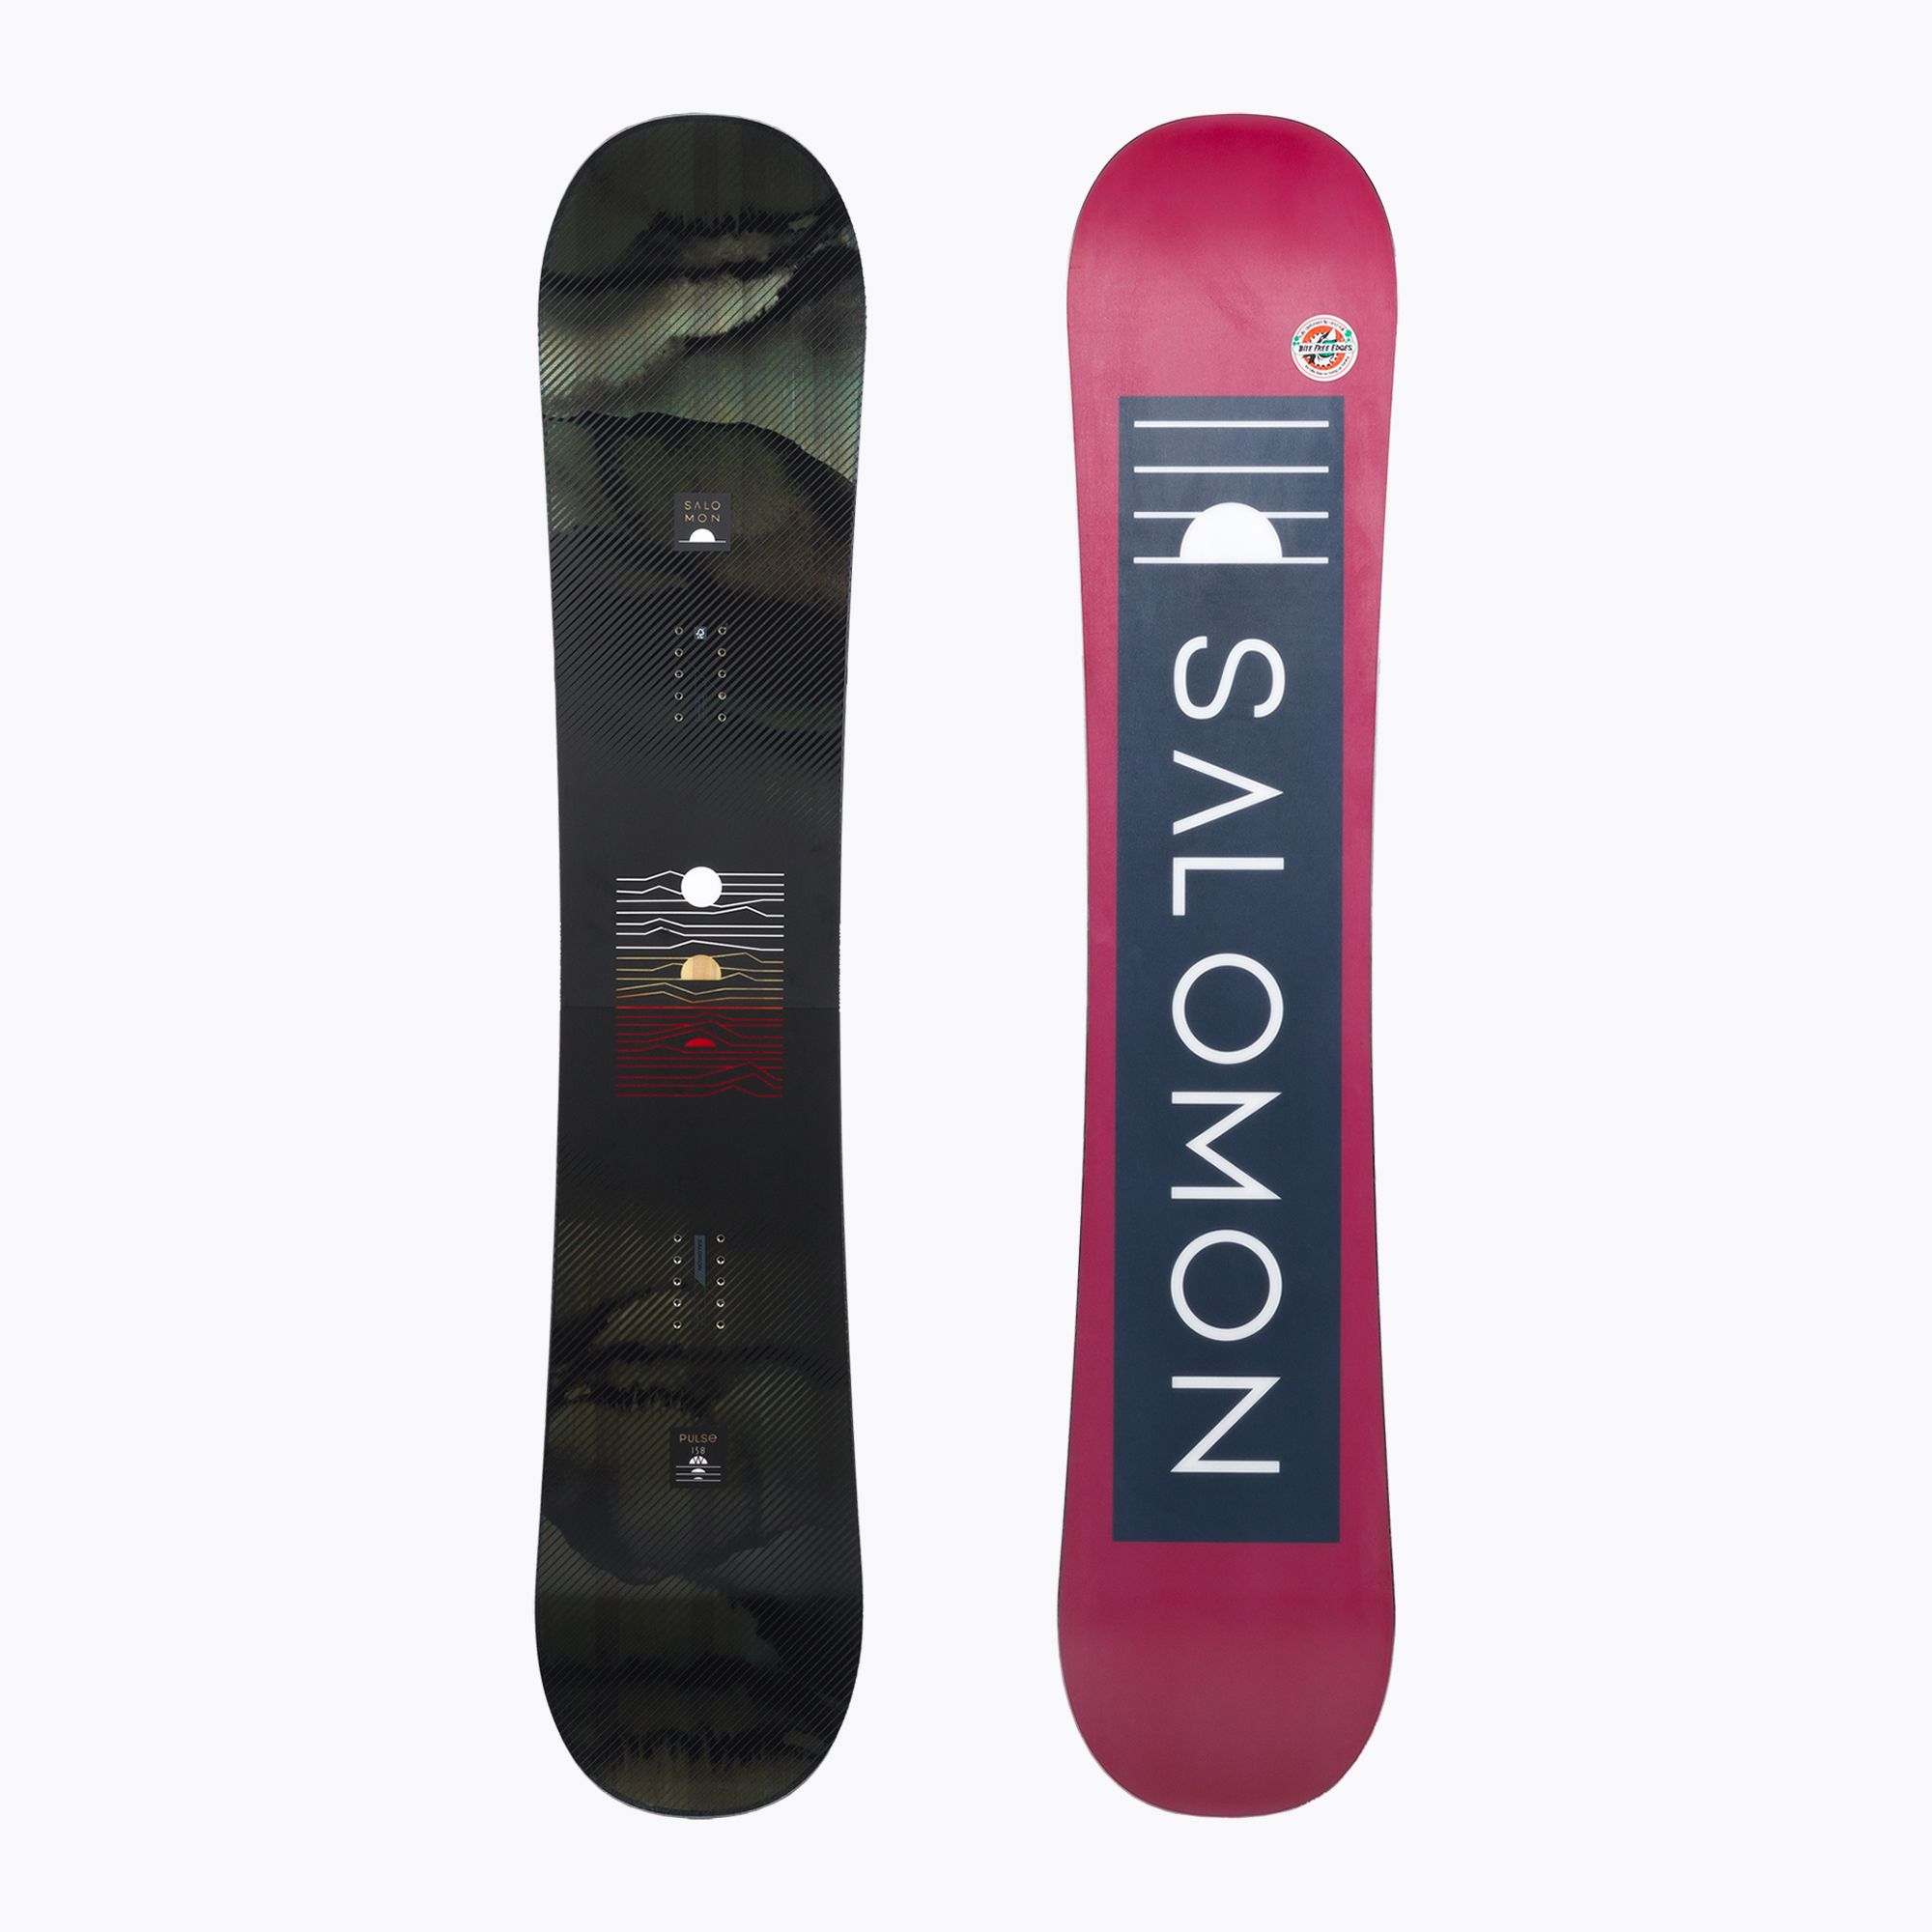 Deska snowboardowa męska Salomon Pulse czarna L47031600